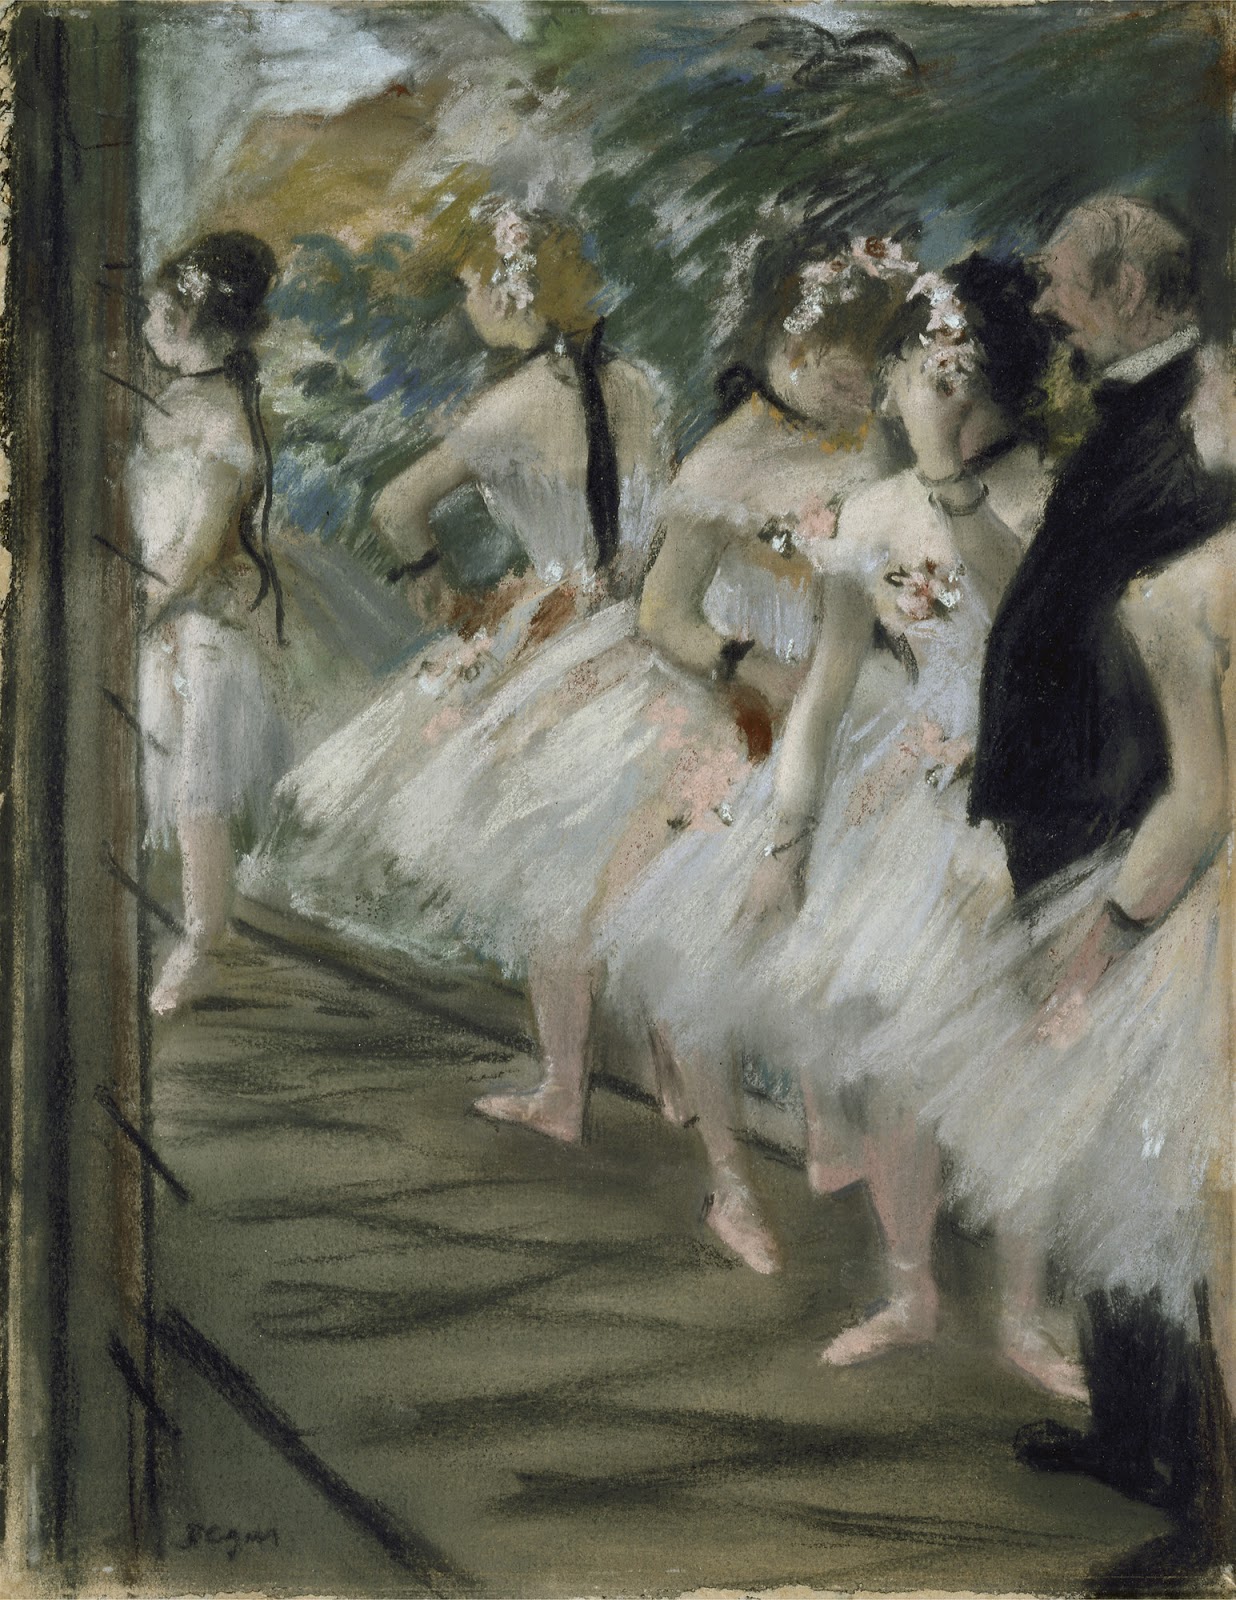 Edgar+Degas-1834-1917 (869).jpg